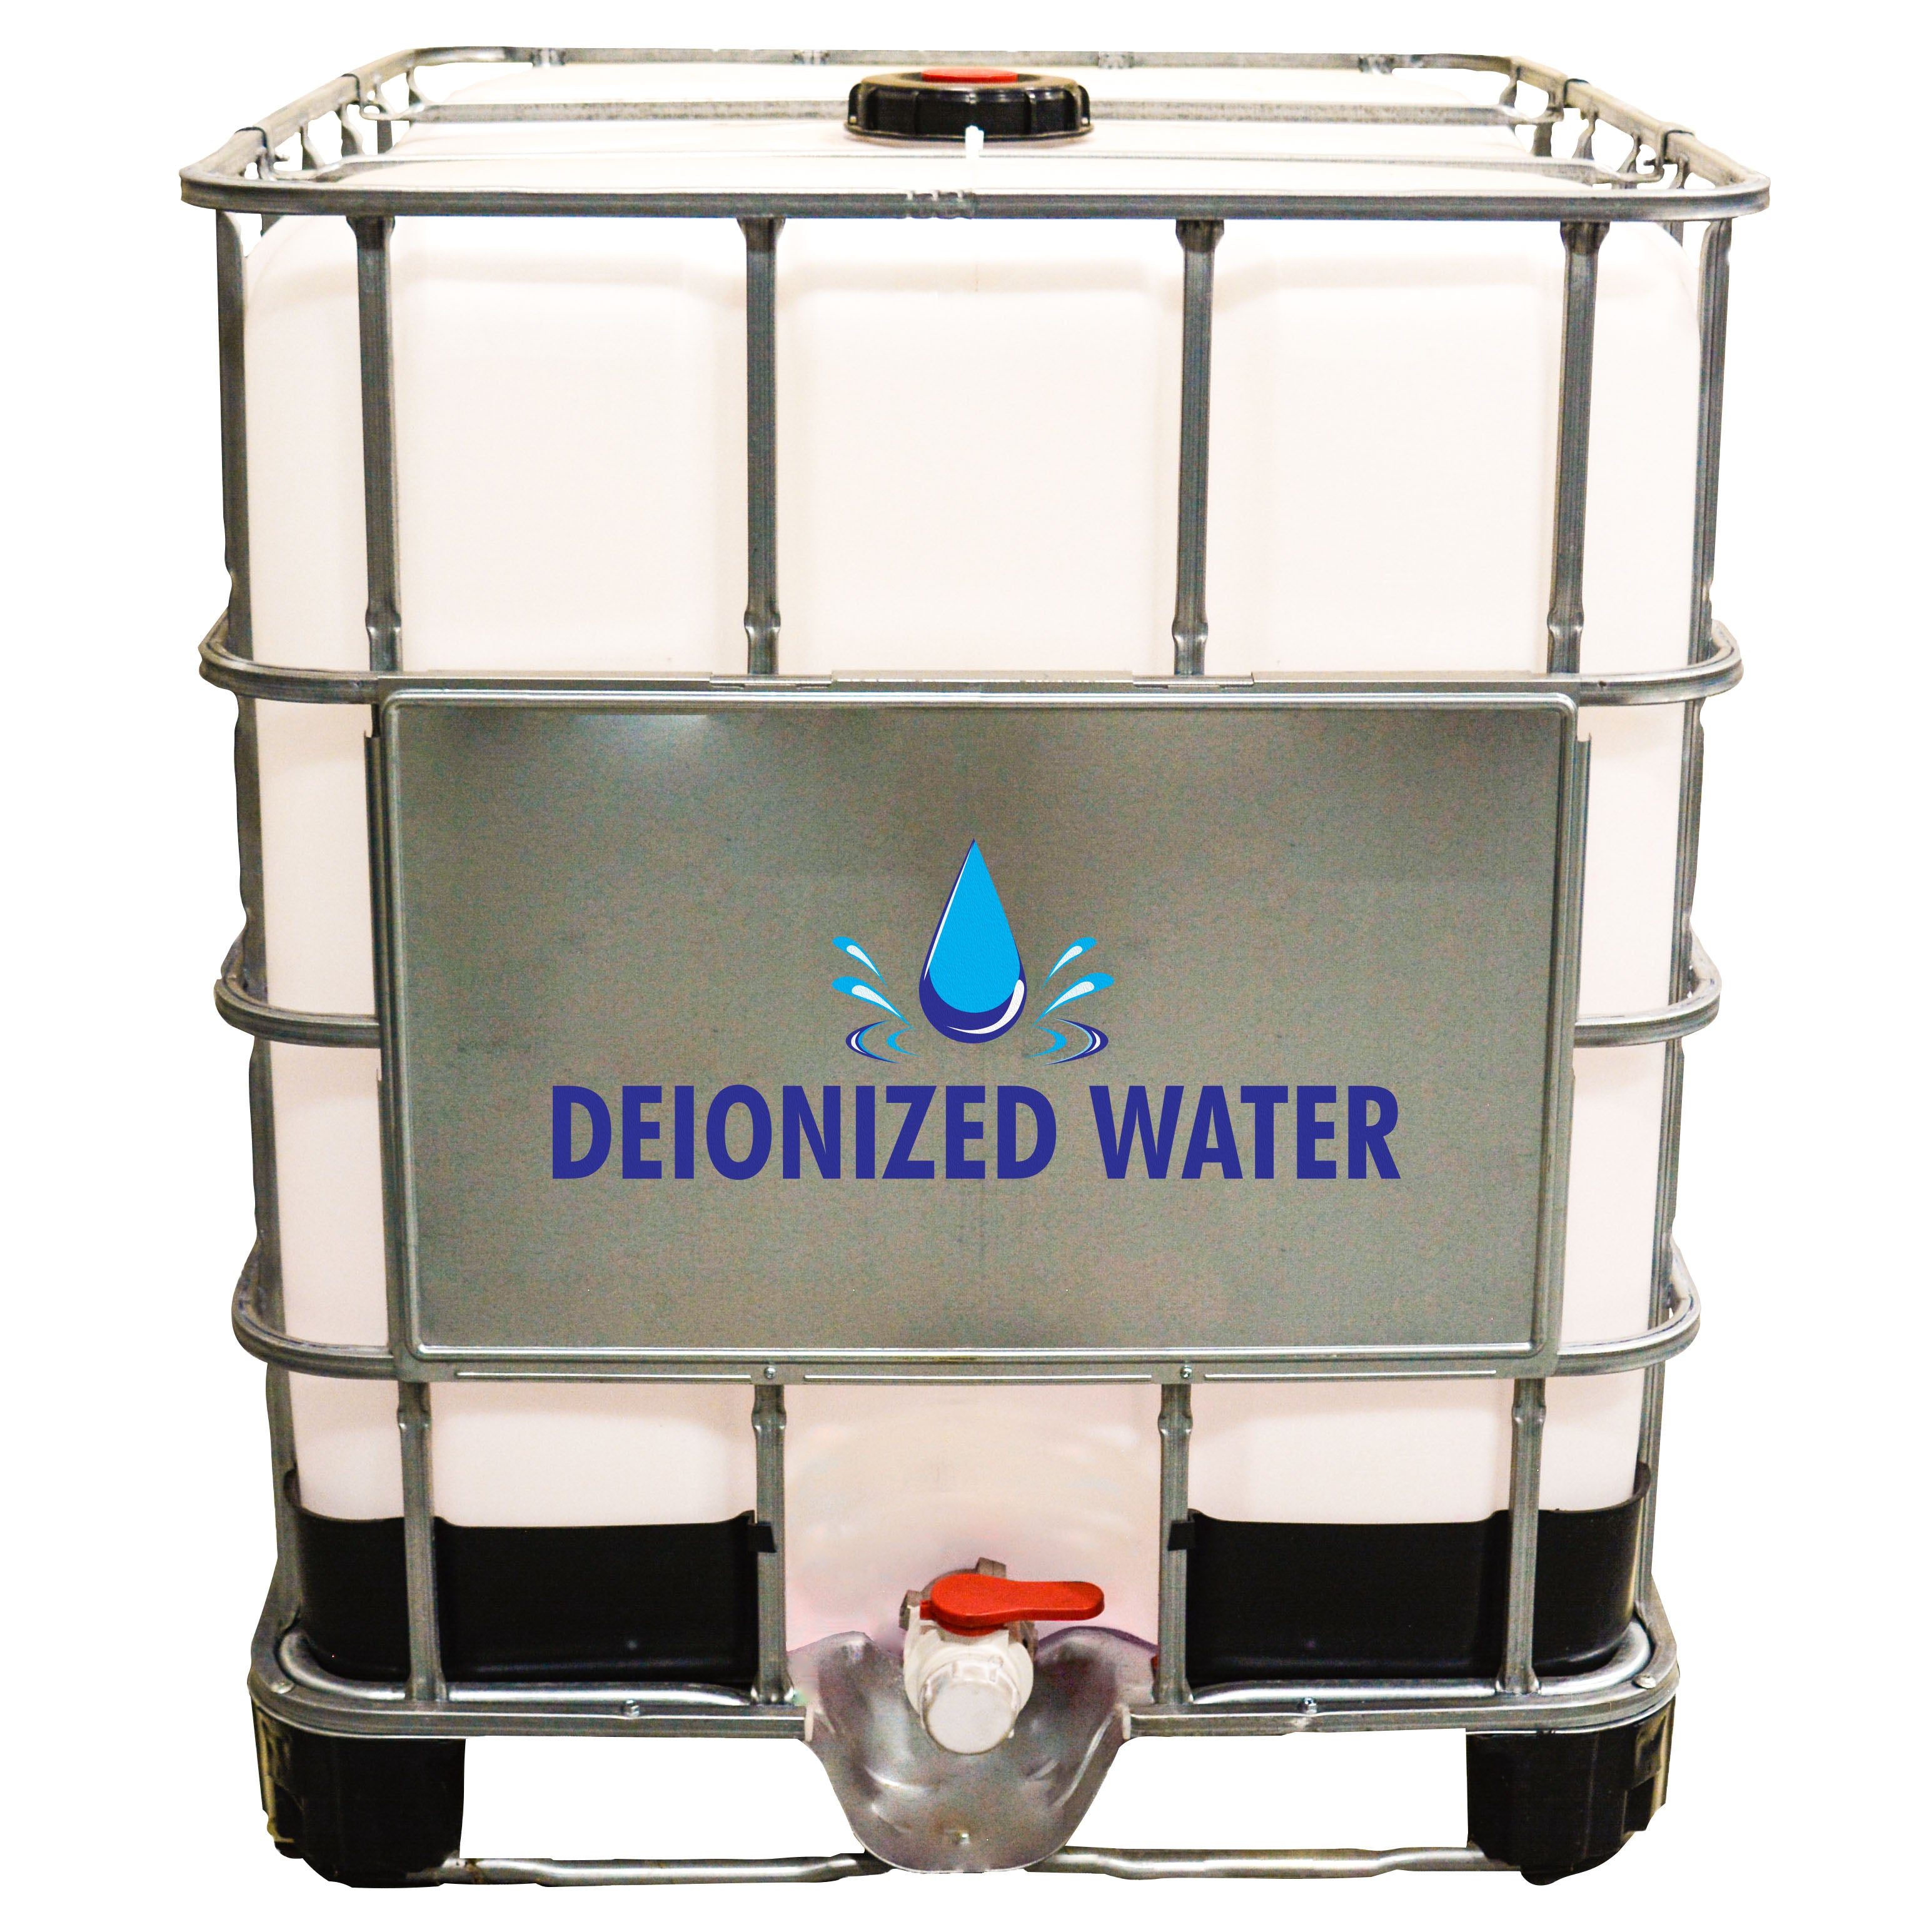 Deionized Water (DI Water) in 275 Gallon Tote